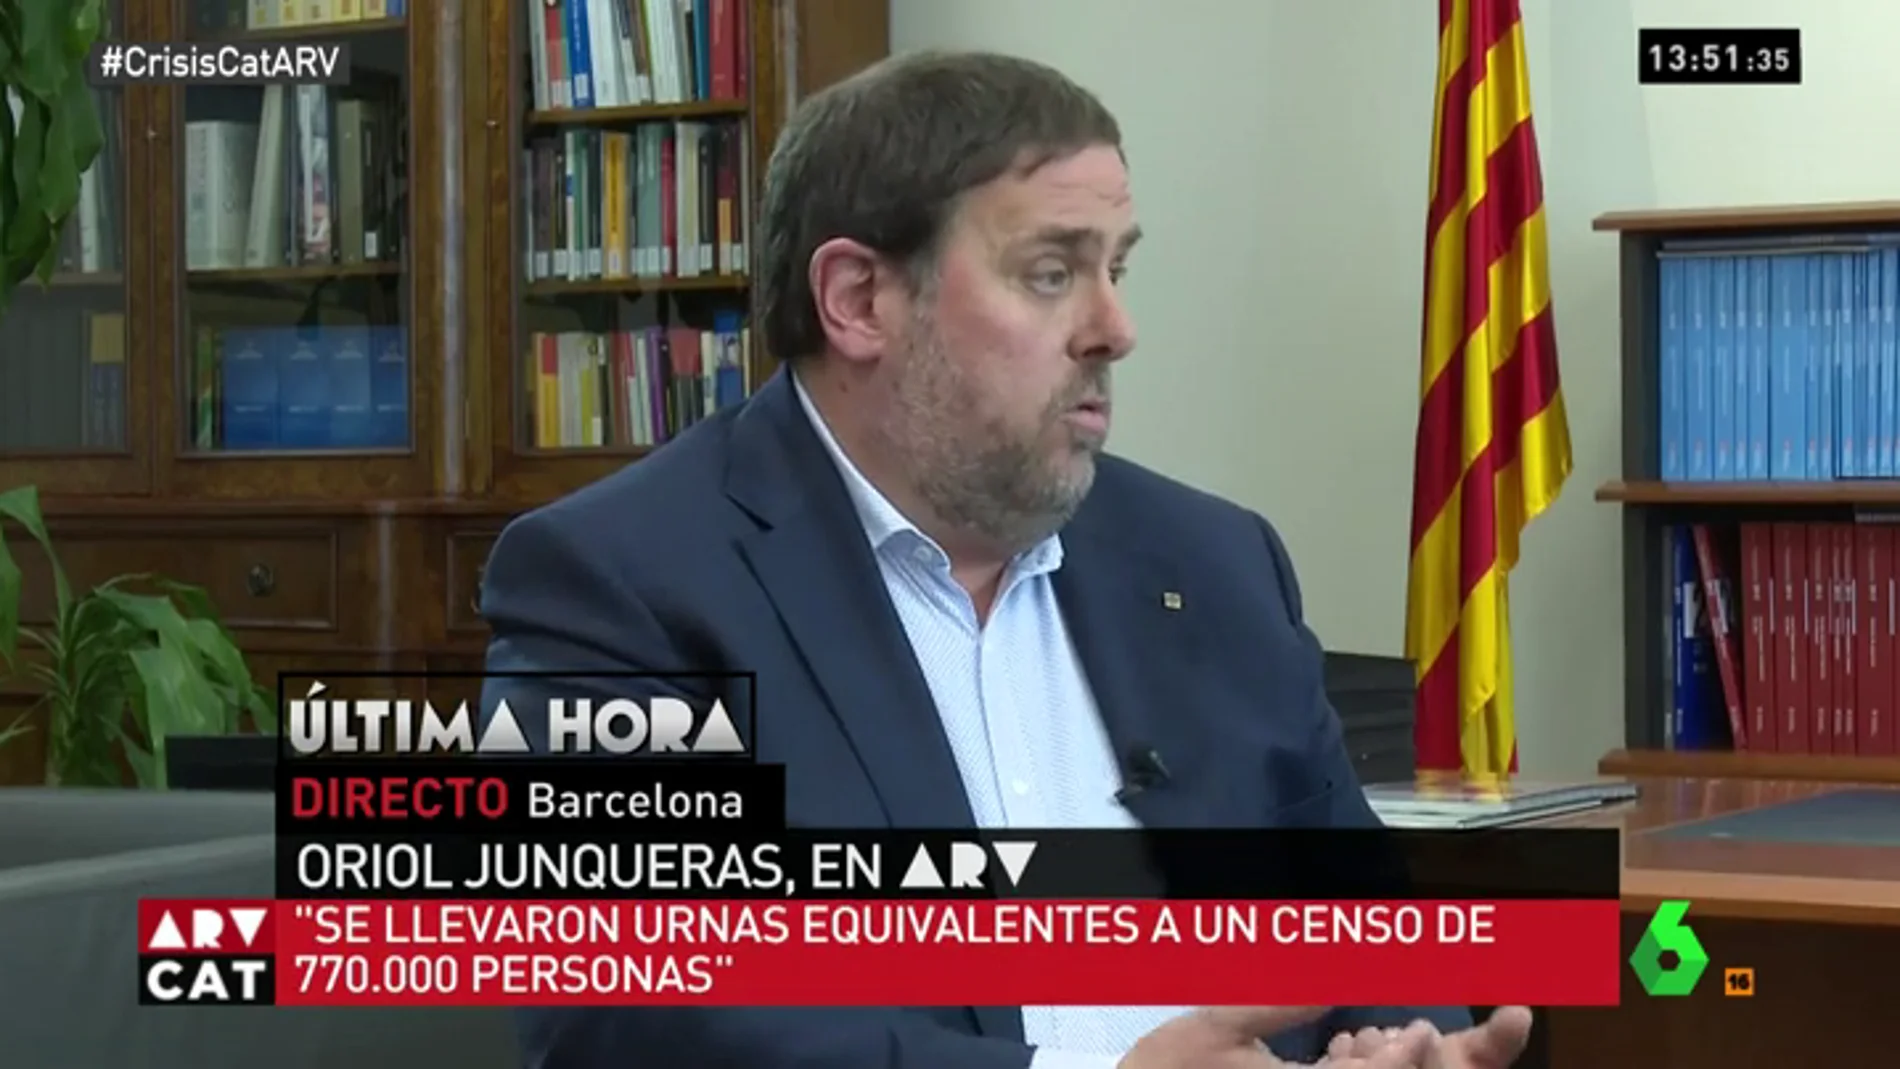 El vicepresidente de la Generalitat, Oriol Junqueras